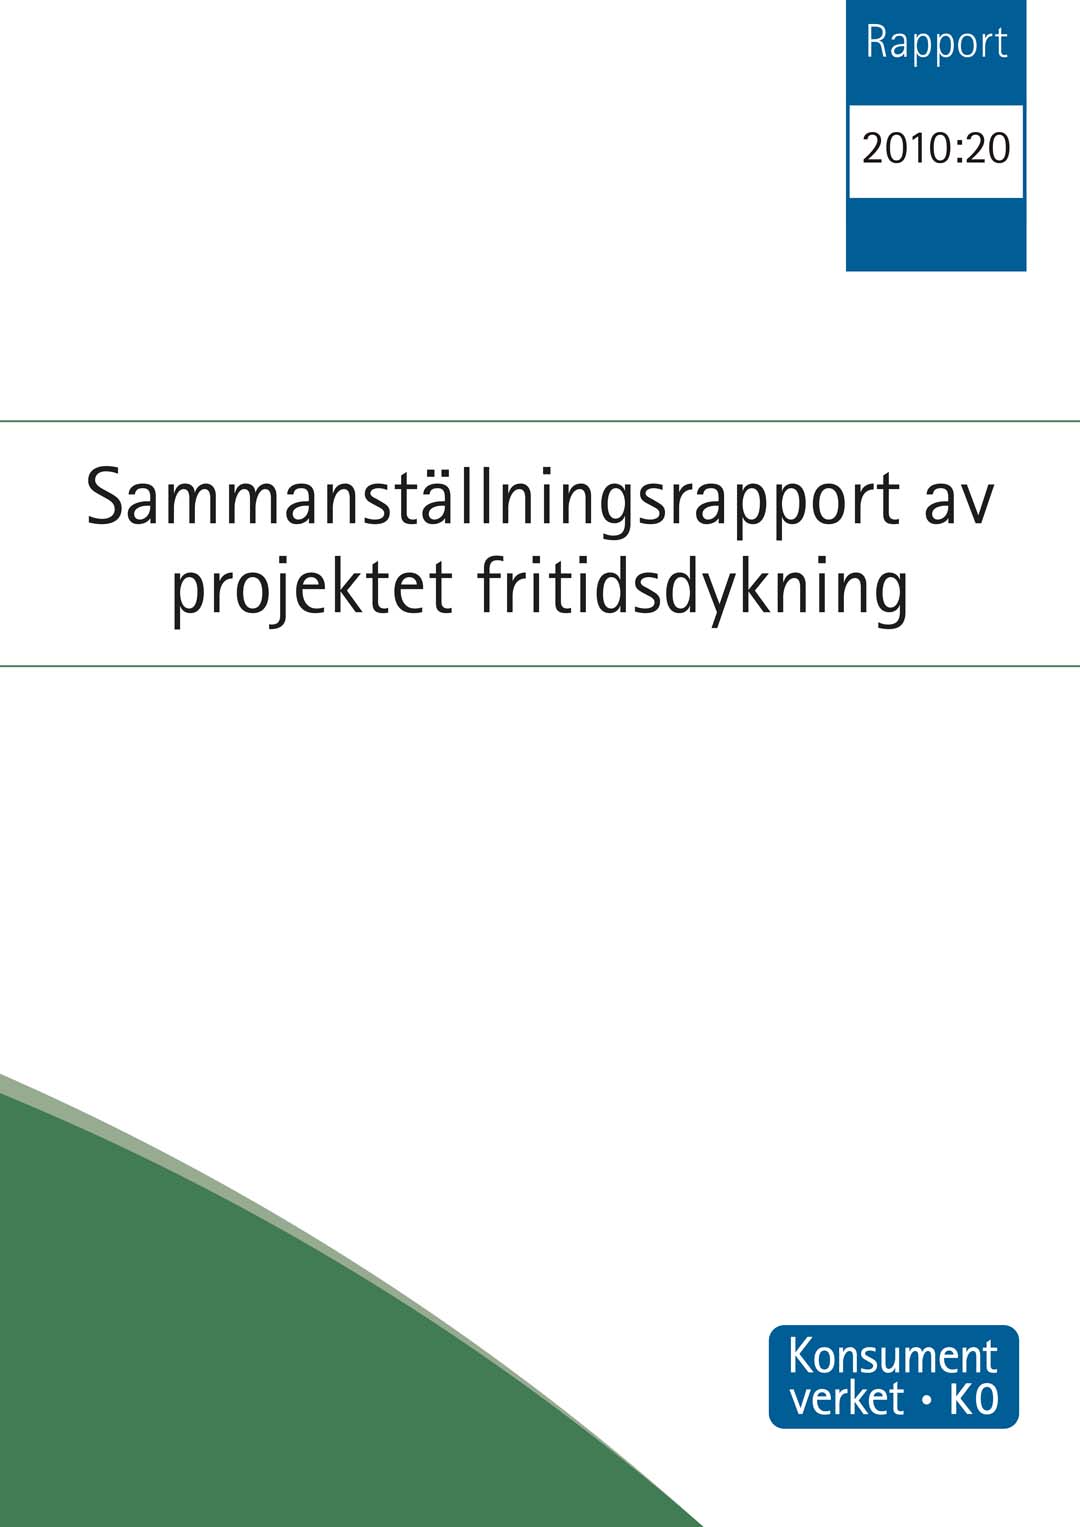 Rapport 2010:20 Sammanställnings-rapport av projektet fritidsdykning